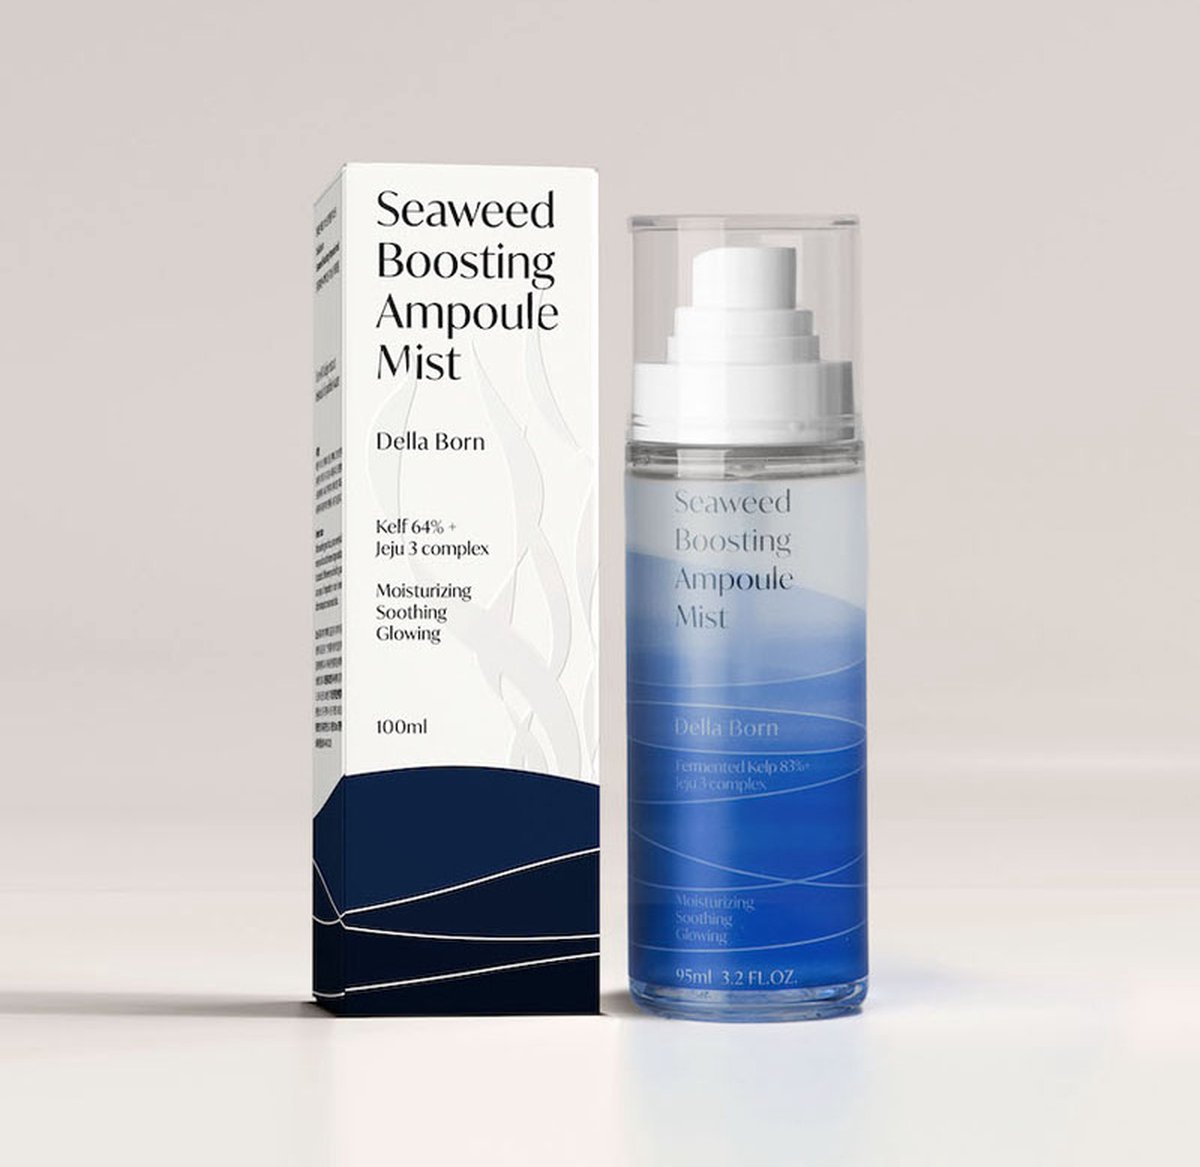 DELLA BORN - Seaweed Boosting Ampoule Mist - 95ml - [Korean Skincare]